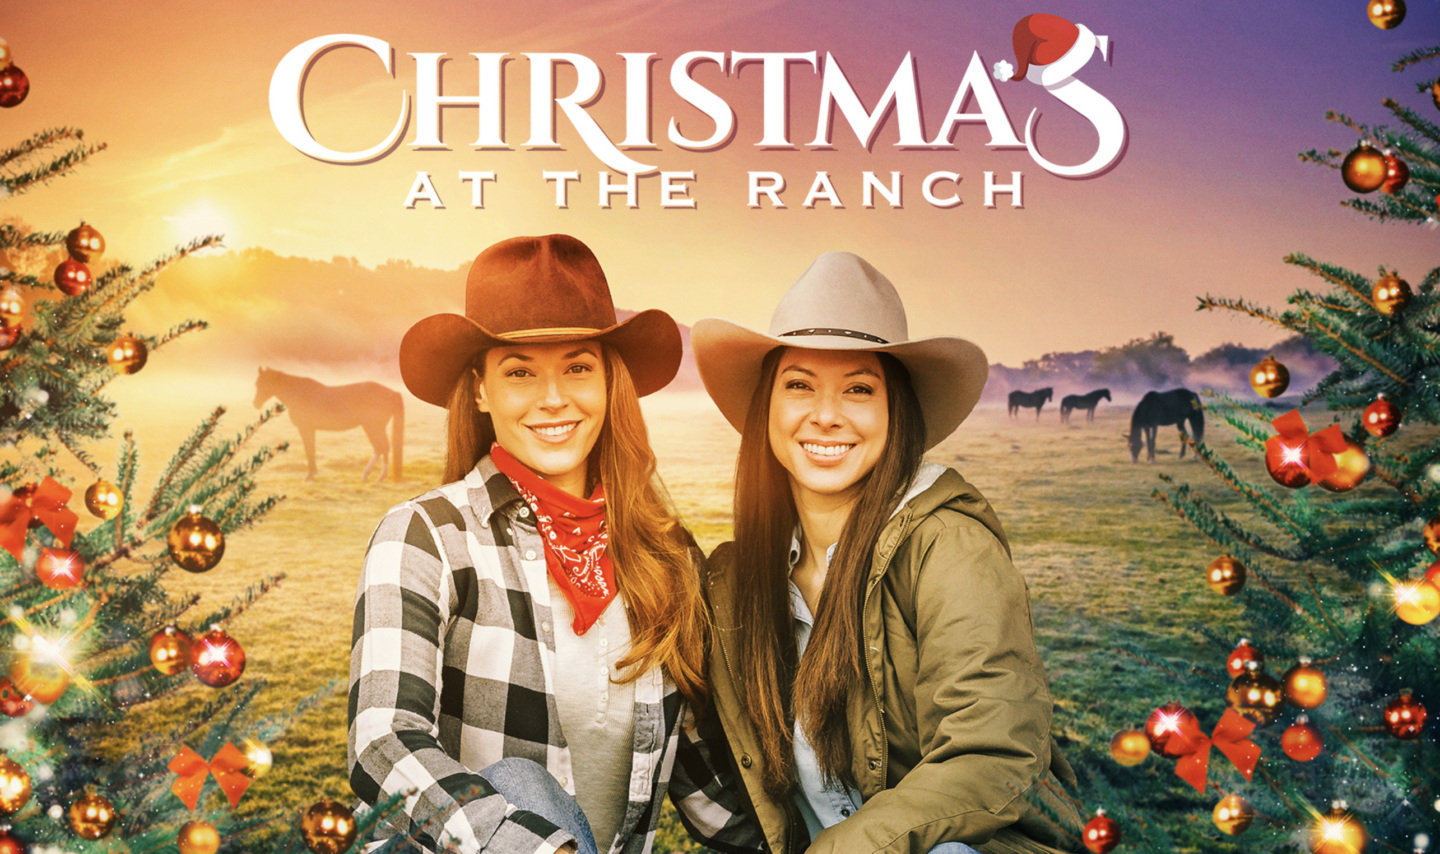 Christmas at the ranch